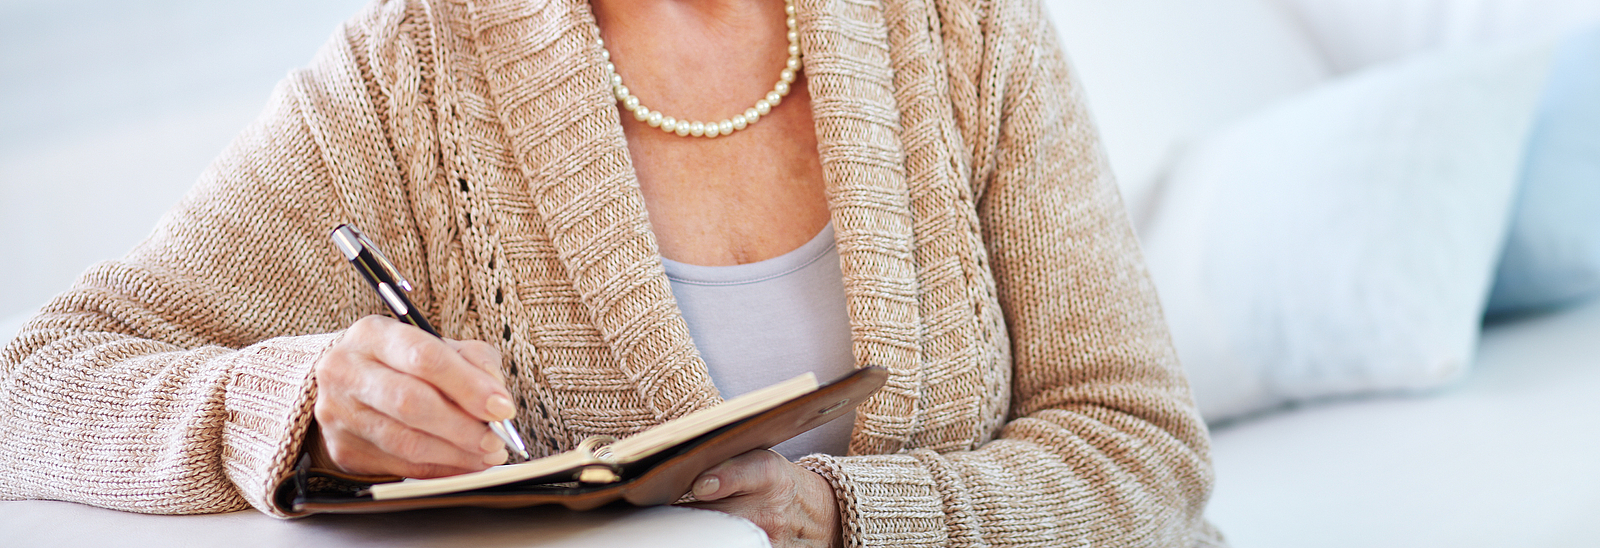 Eine ältere Frau schreibt in ein kleines Buch.